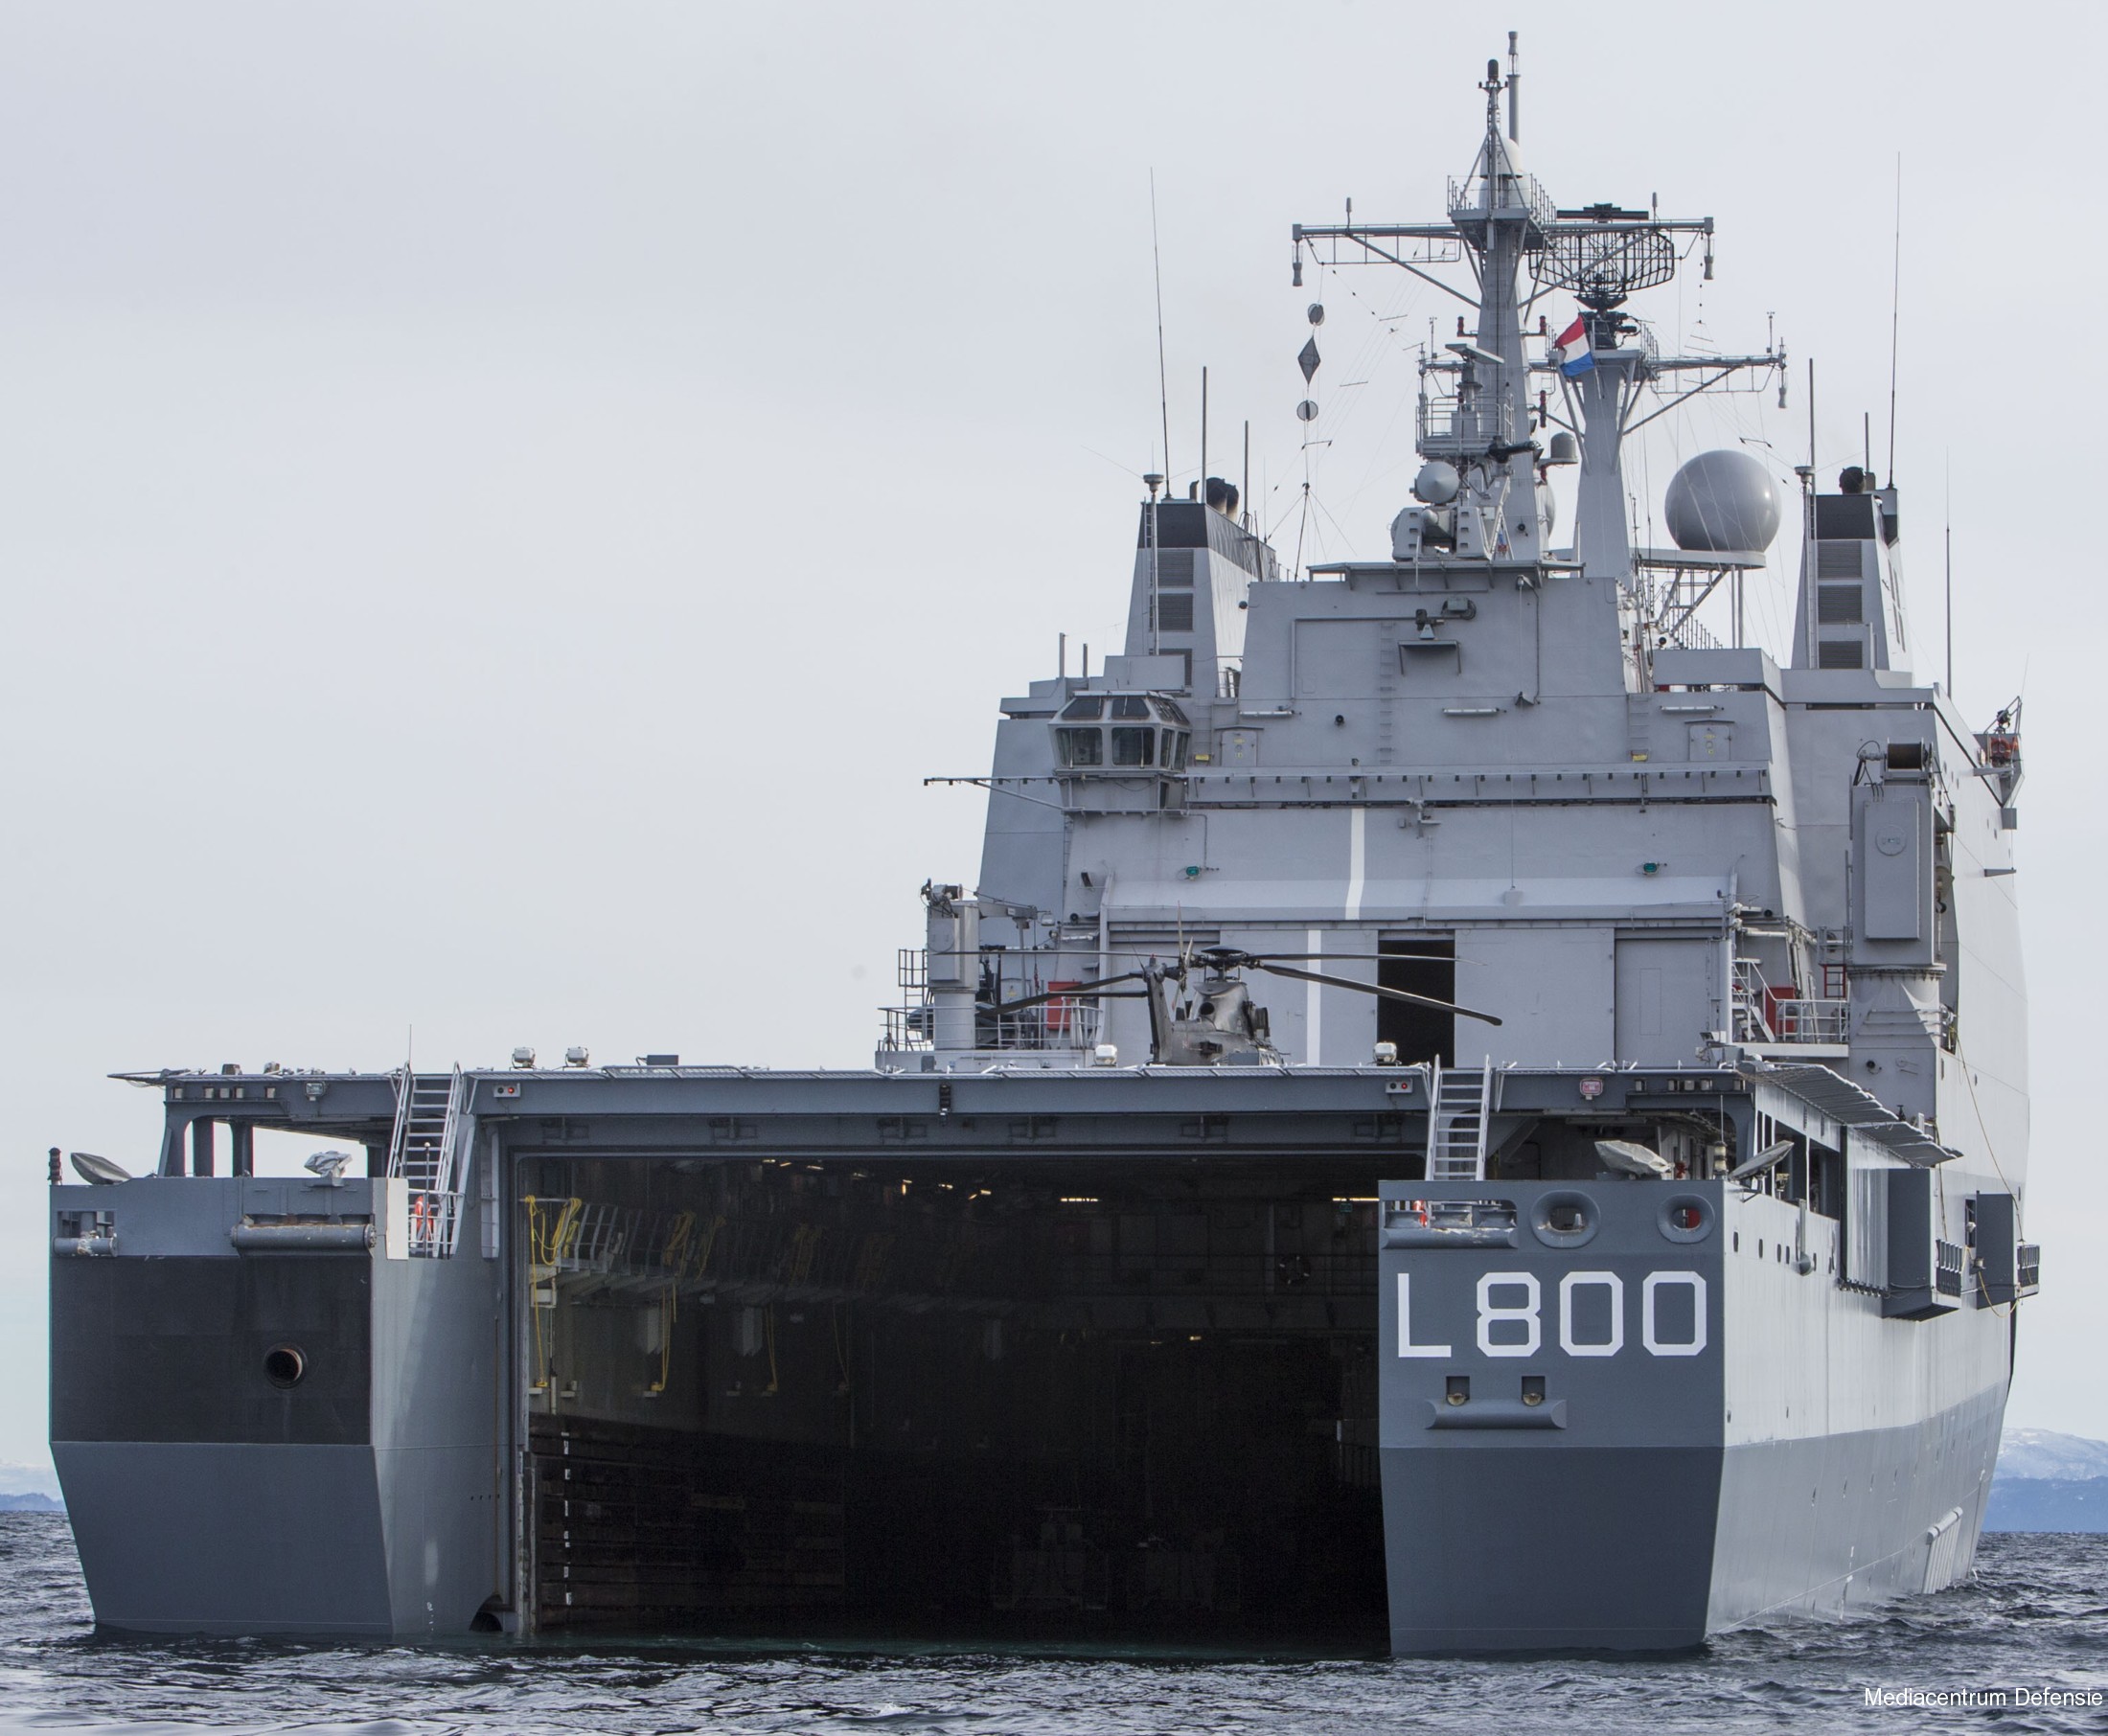 l-800 hnlms rotterdam amphibious landing ship dock lpd royal netherlands navy 10 well deck operations